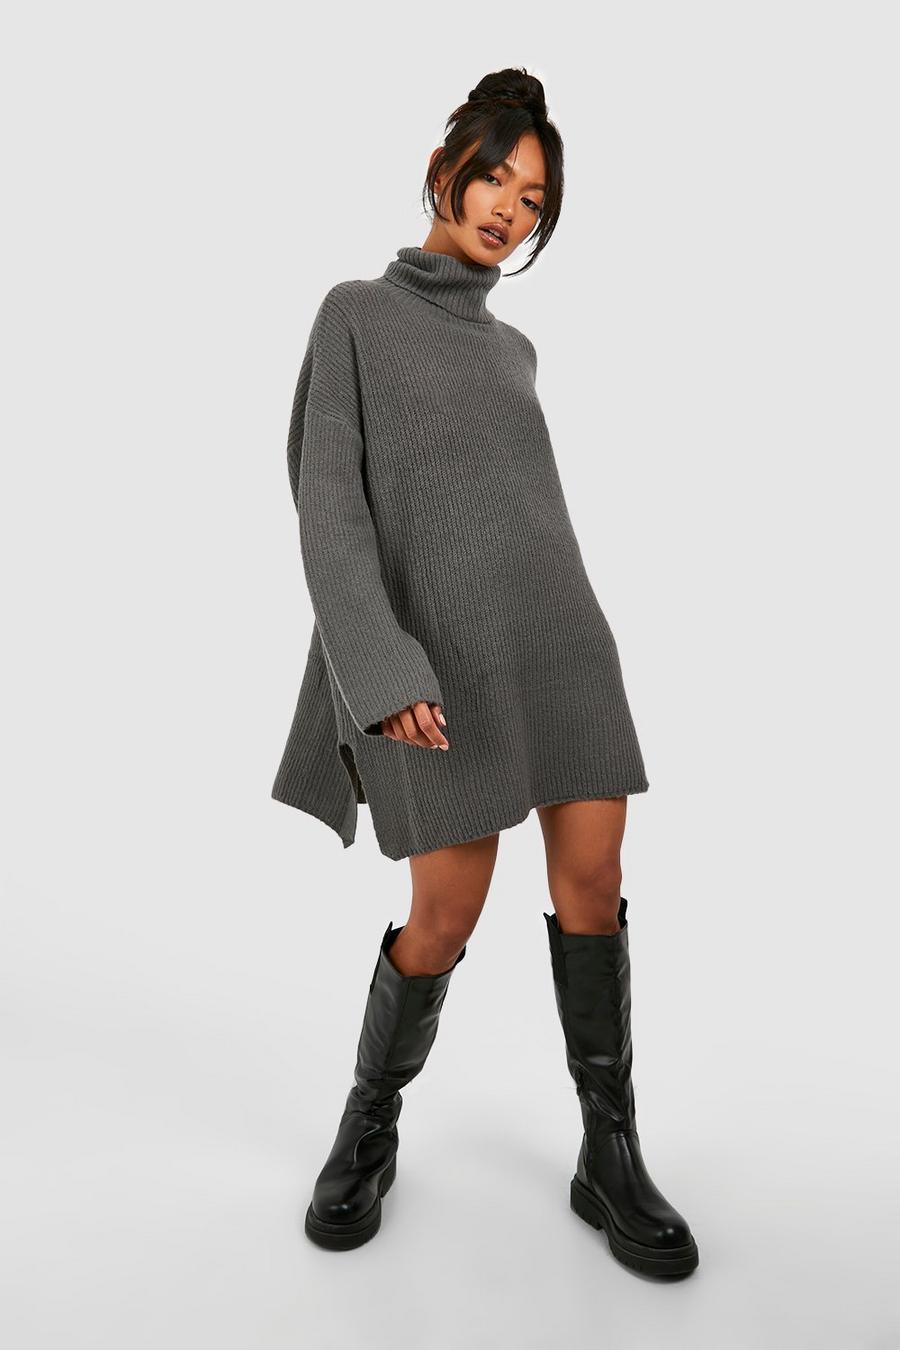 boohoo Womens Oversized Wide Sleeve Sweater Dress - Beige Xs